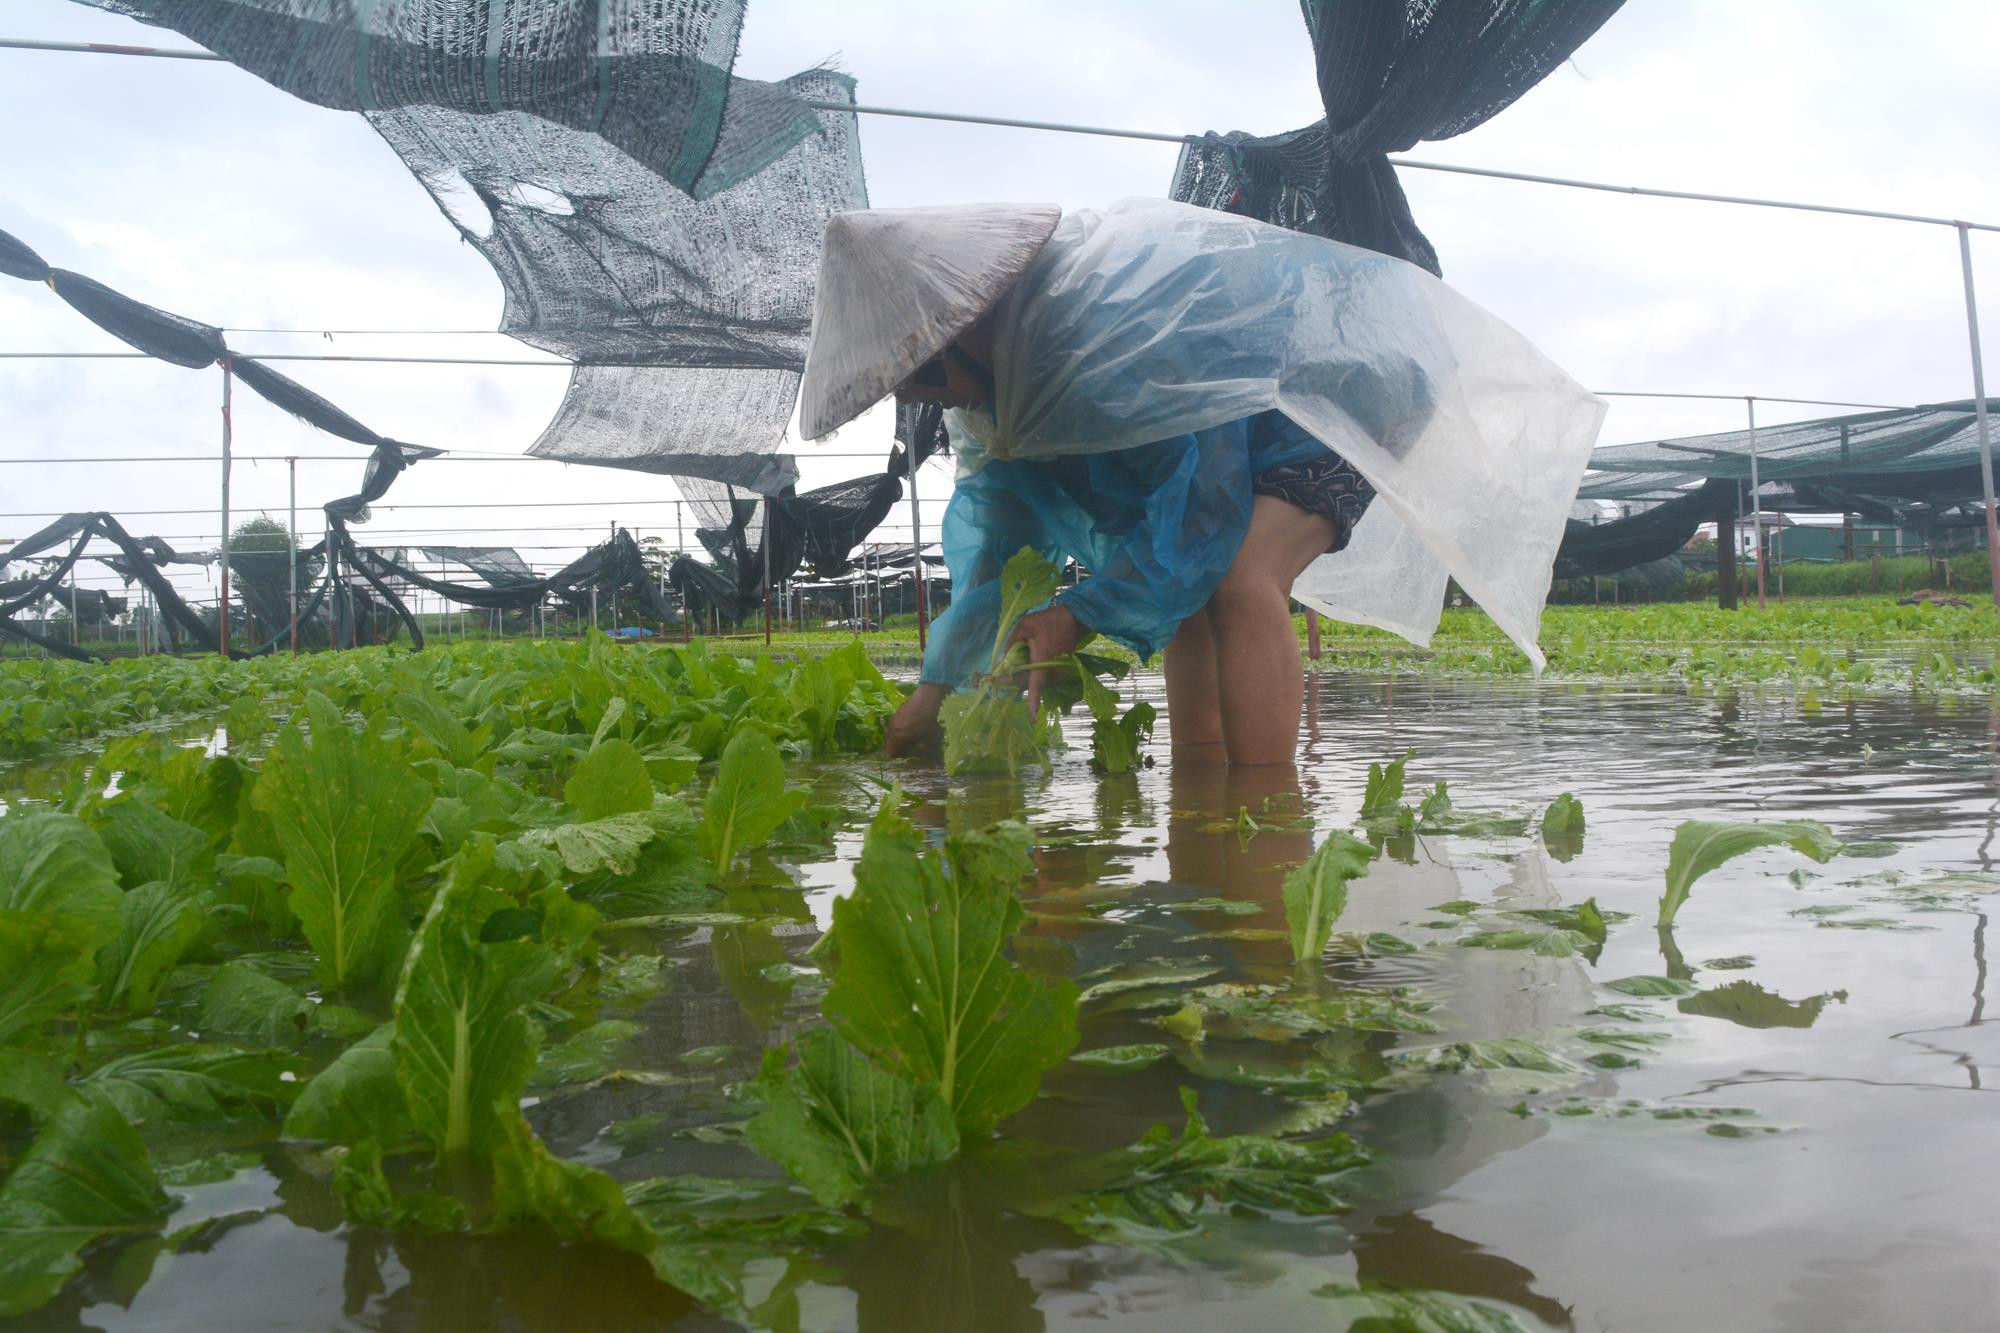 Đội mưa thu hoạch rau cải, vớt vát một phần thiệt hại khi rau bị ngập úng. Ảnh: Thanh Phúc